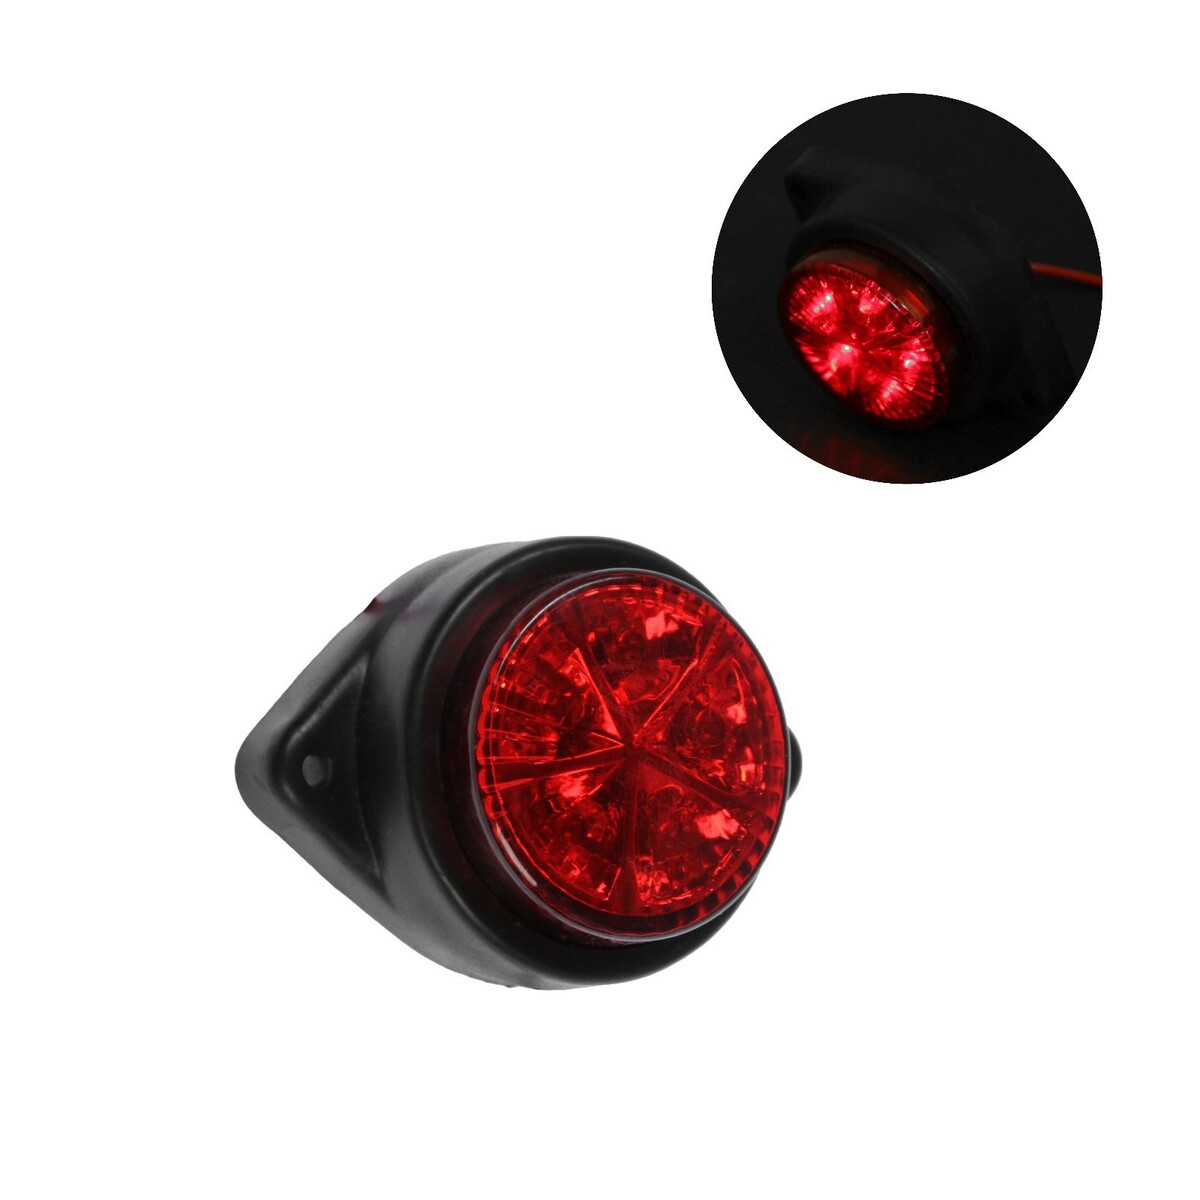 Габаритный фонарь светодиодный 12 в, красный фонарь велосипедный габаритный cat eye tl ld270 bw 3 c 3 белых светодиода с батареей ce5342201